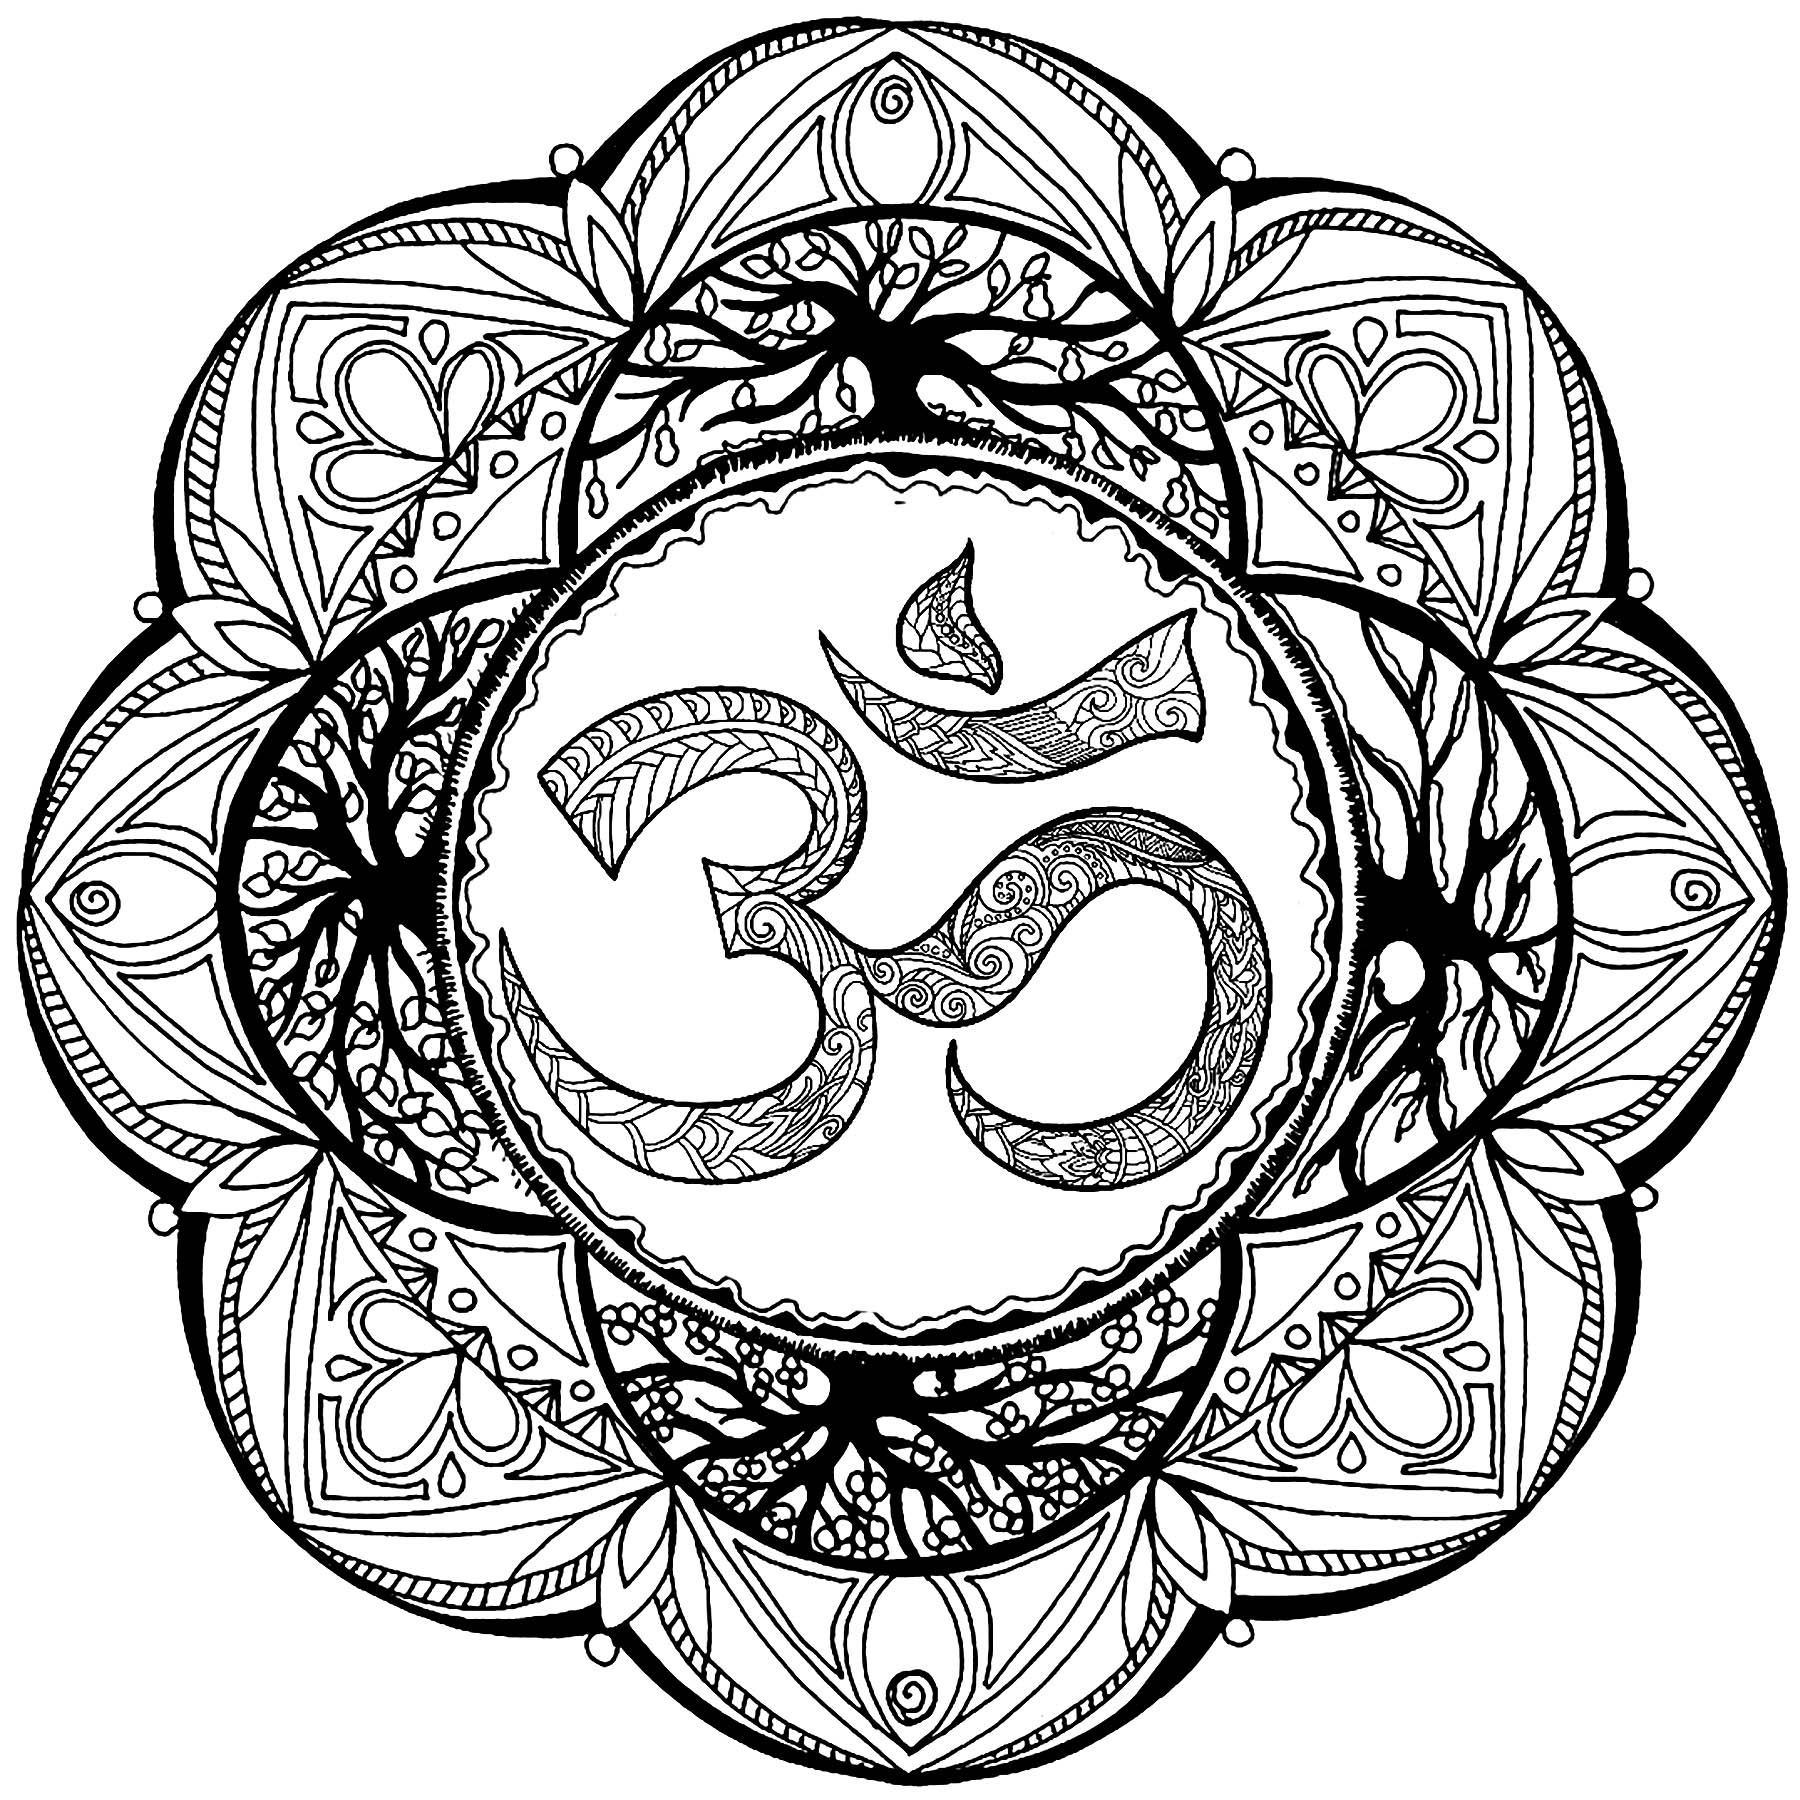 Mandala con muchos detalles y el símbolo Om en el centro